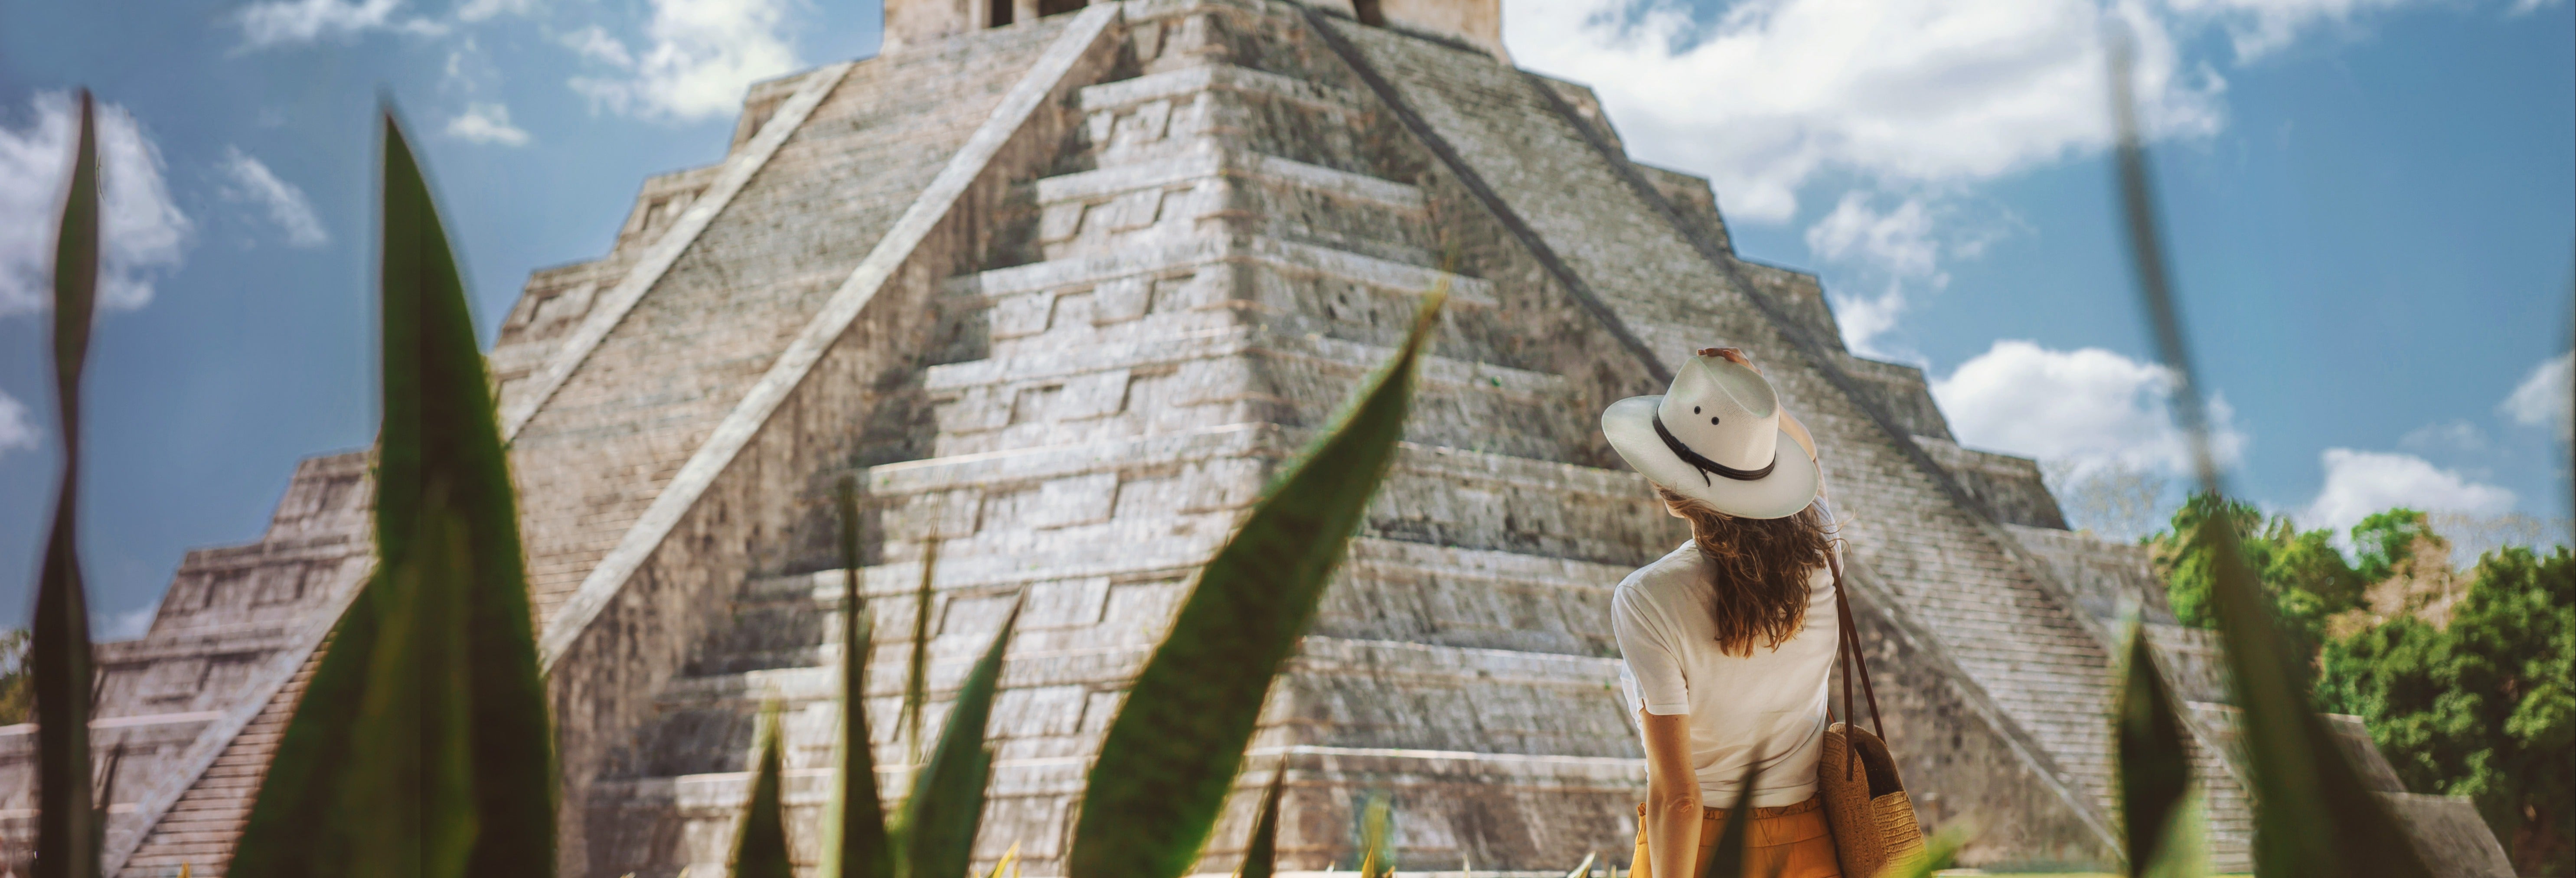 Excursión a Chichén Itzá desde Cancún